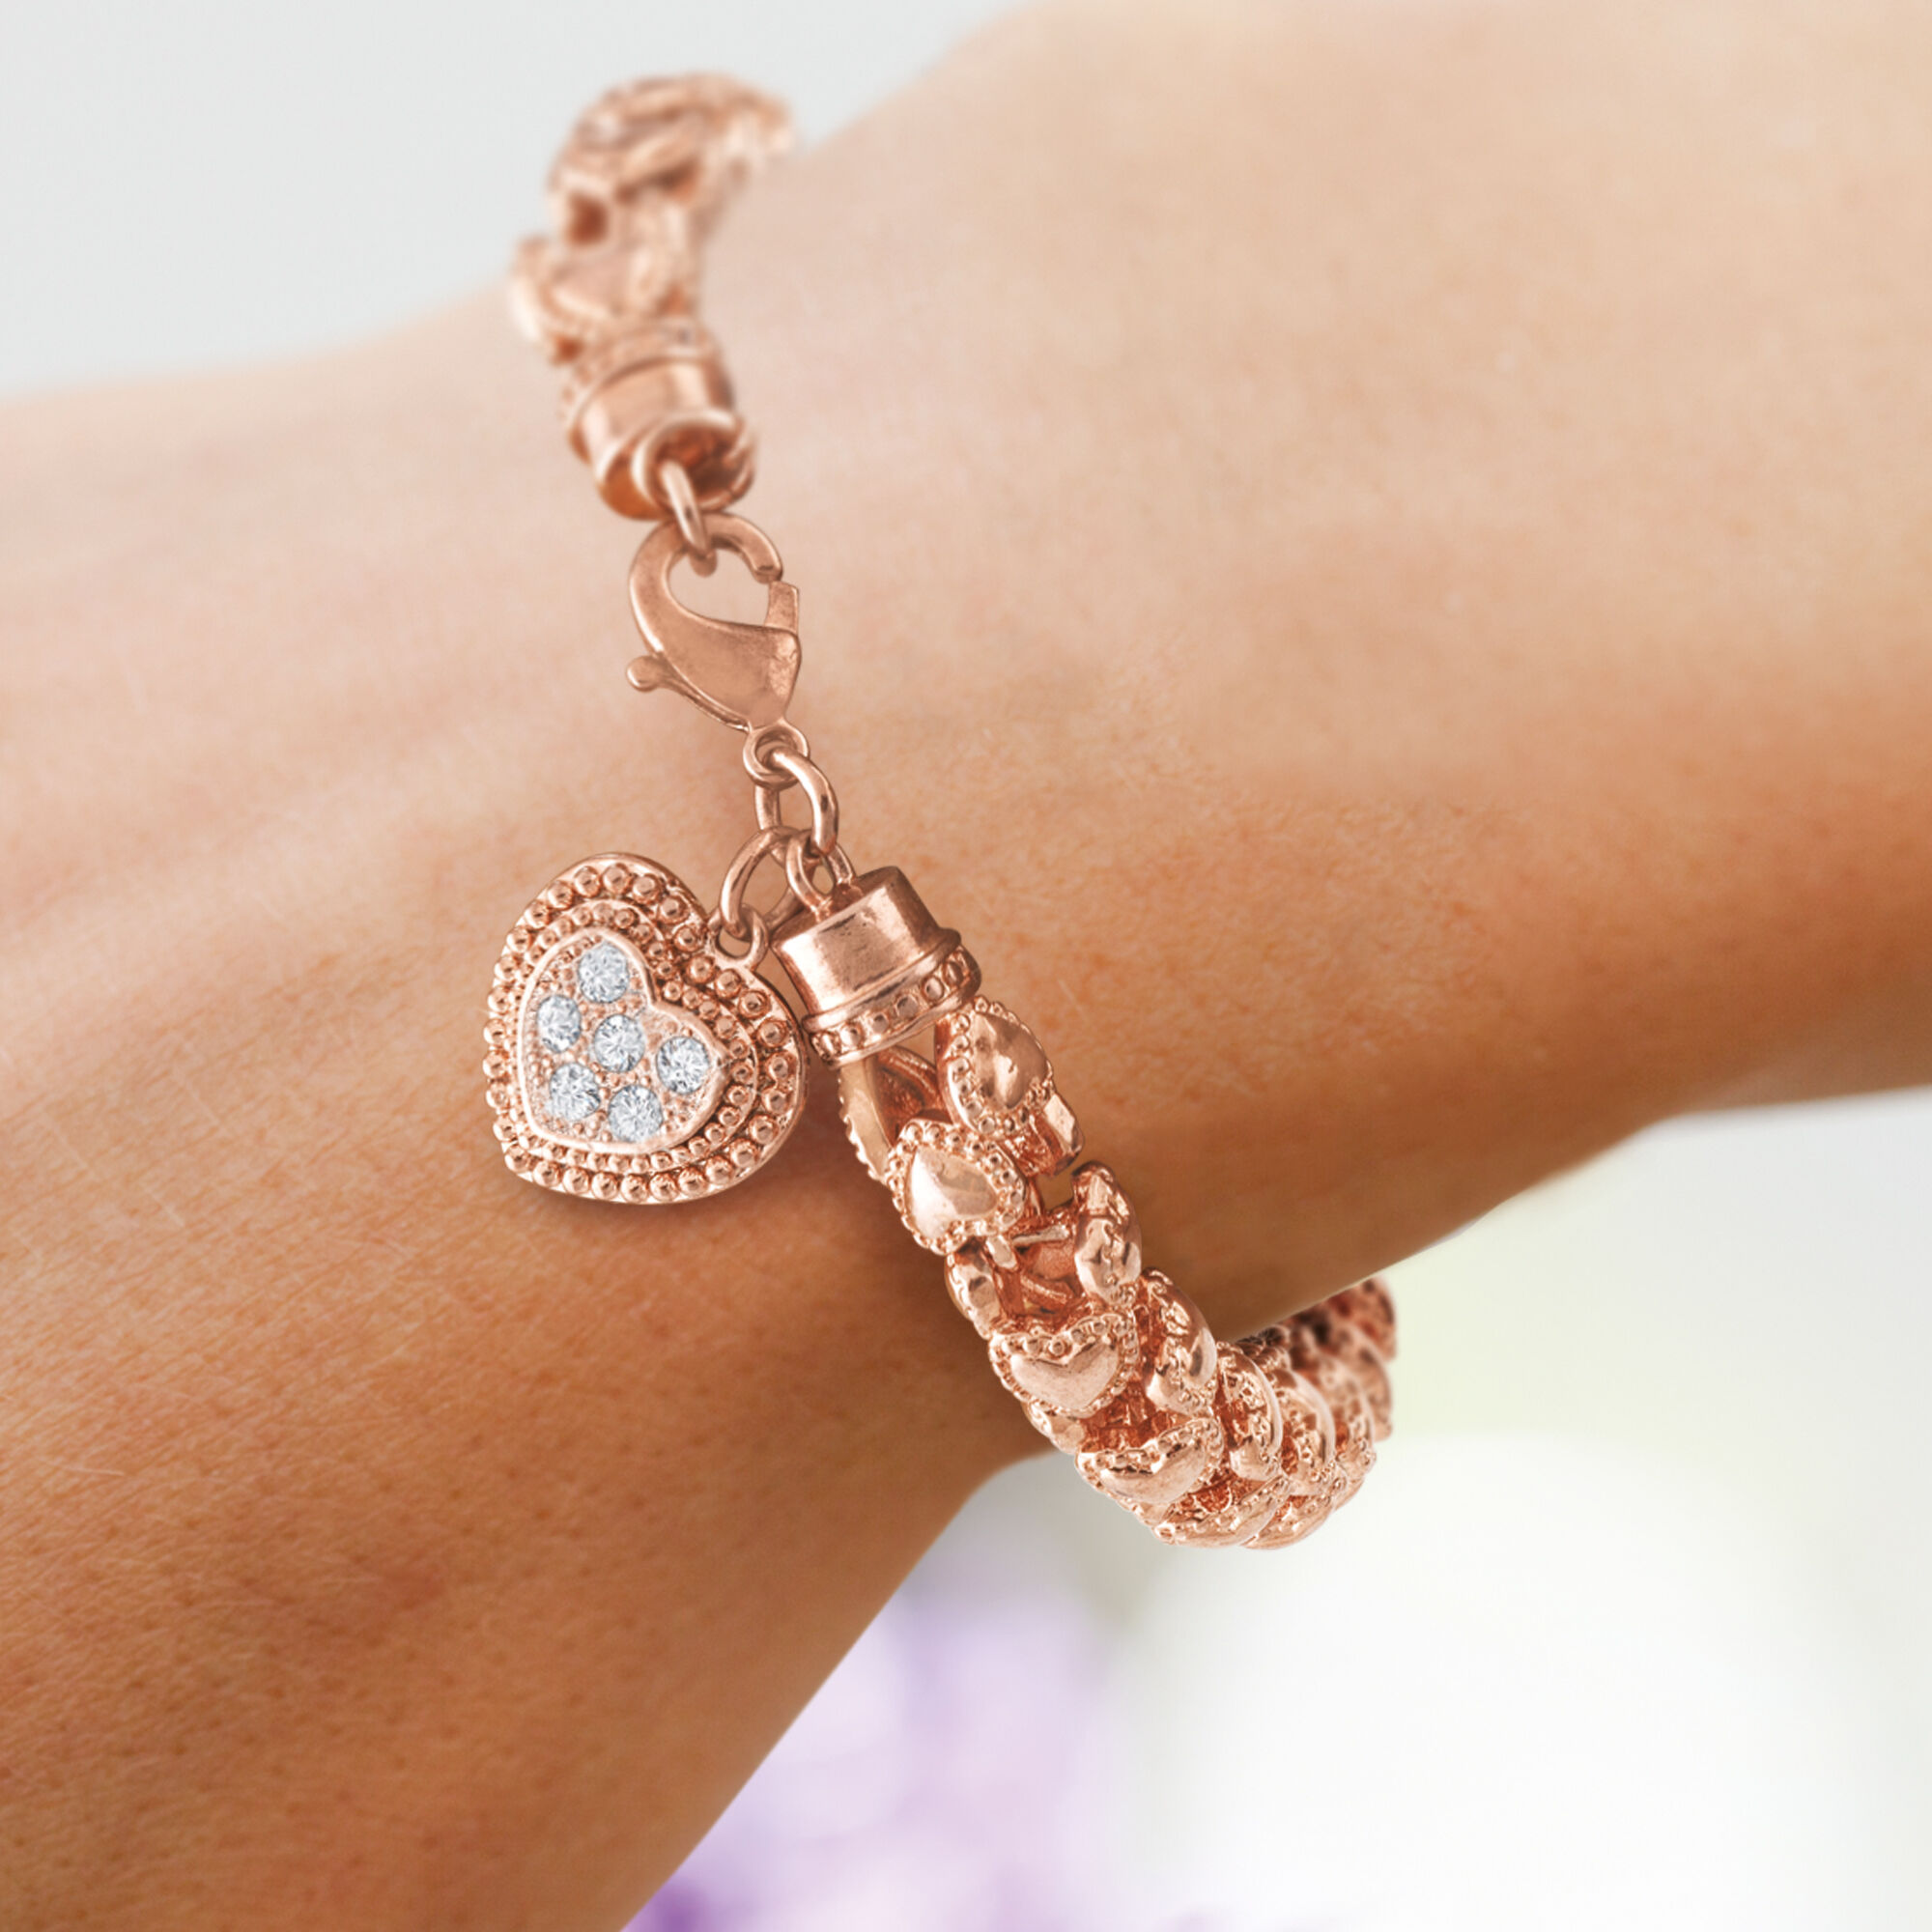 The Sweetheart Copper Bracelet 10326 0014 m model